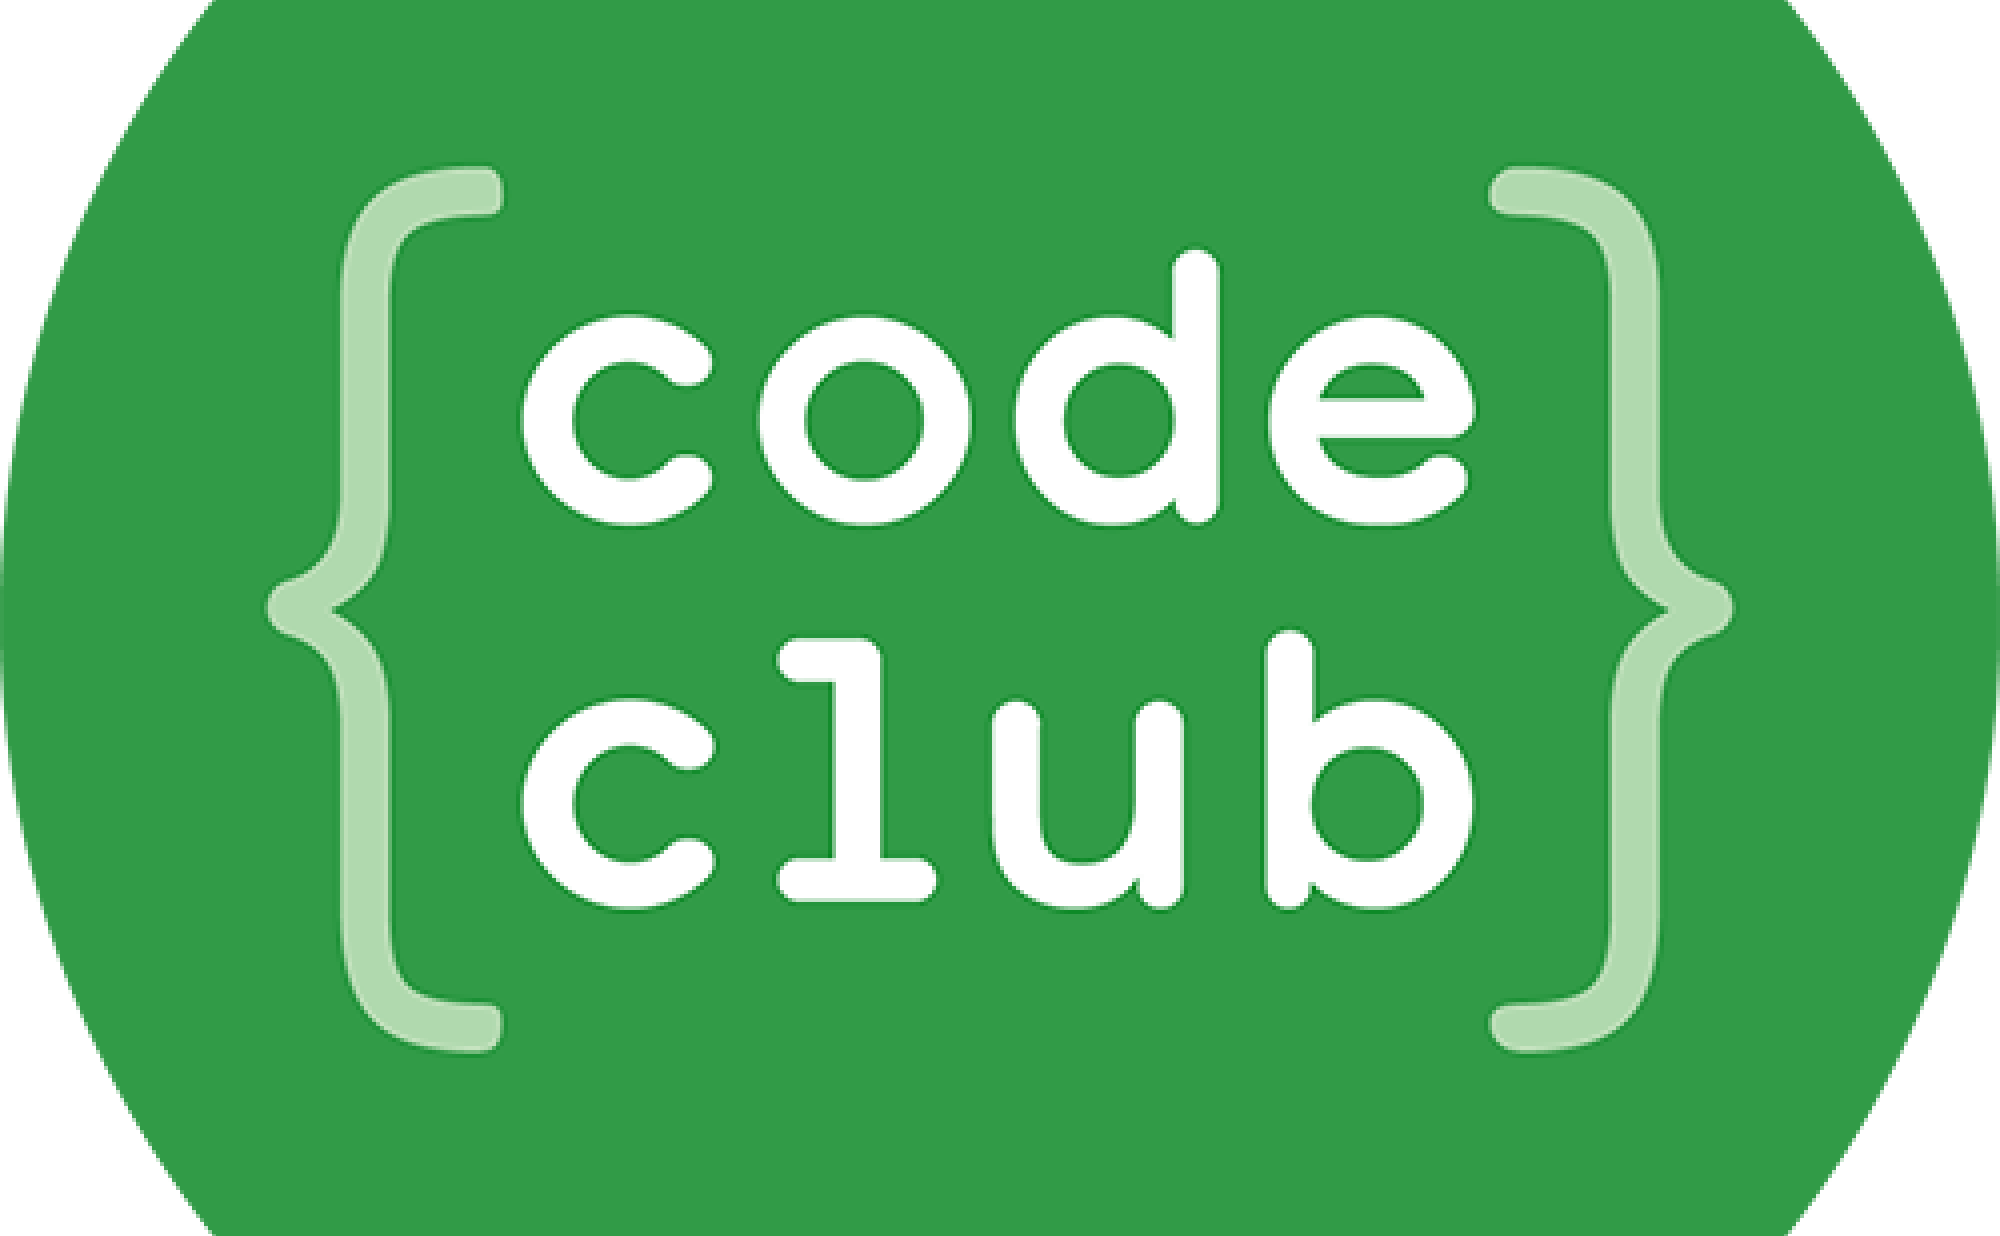 Code Club logo